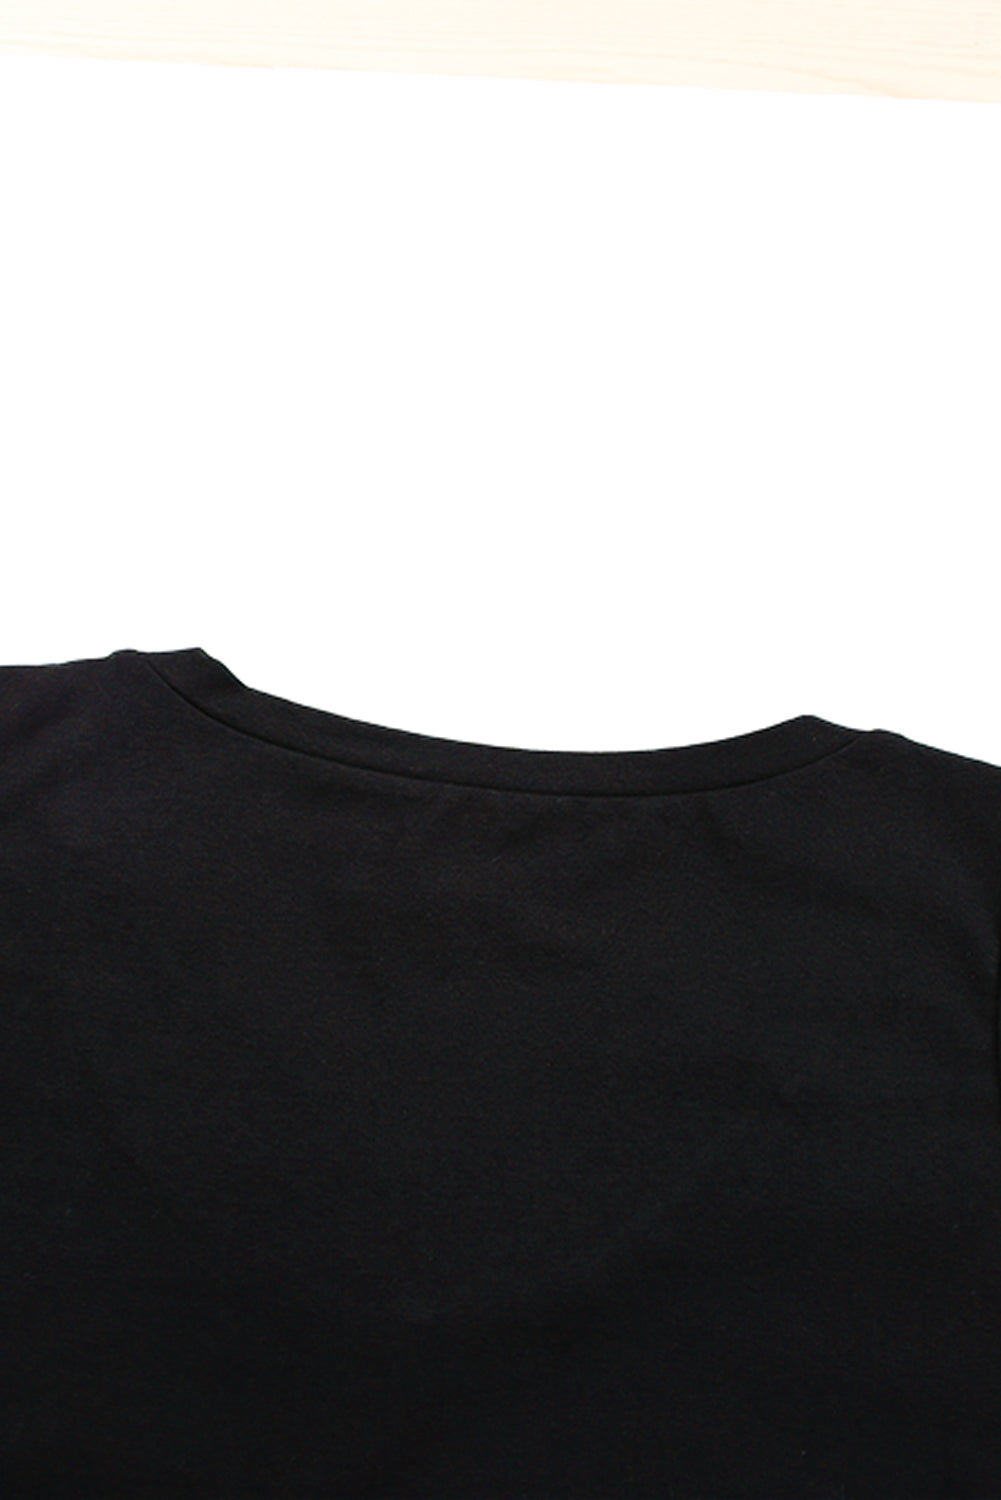 Črna majica brez rokavov z izdolbenim ovratnikom